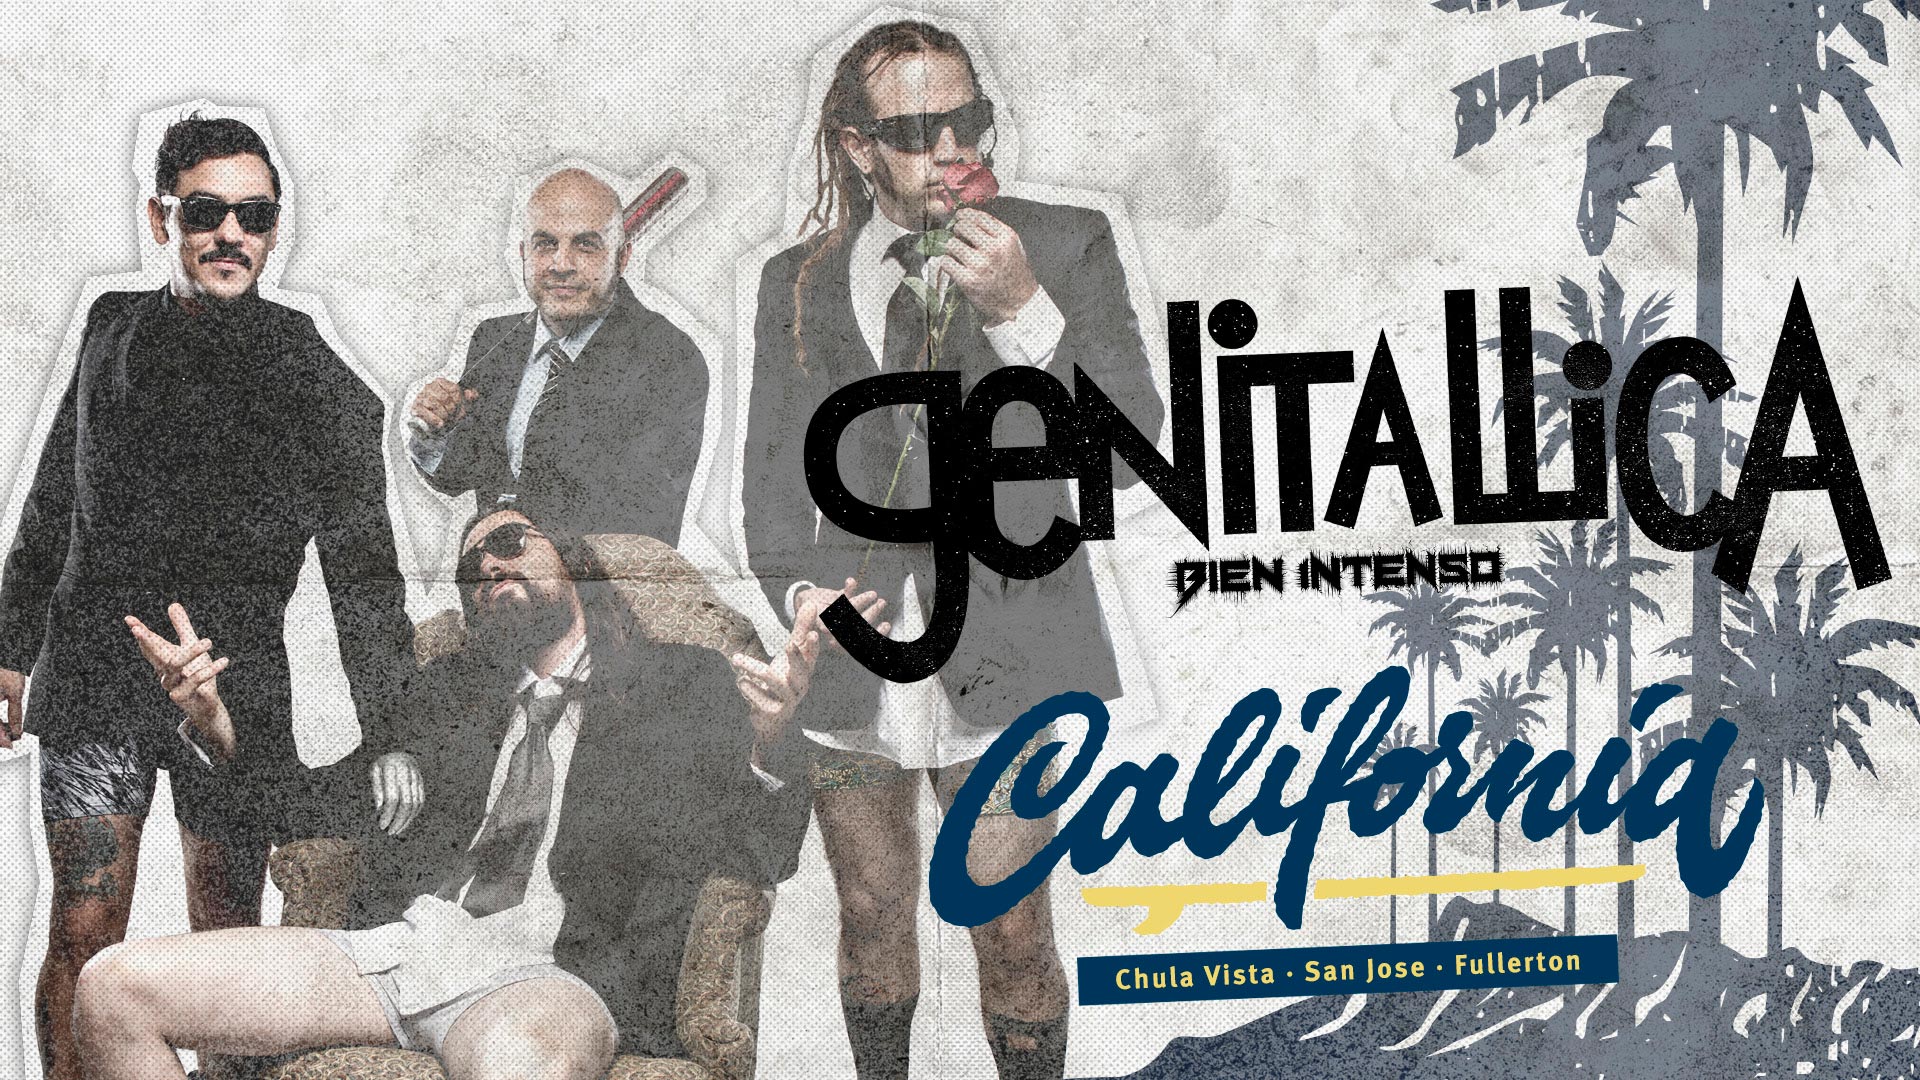 El tour “Bien Intenso” de Genitallica llega a tierras Californianas.